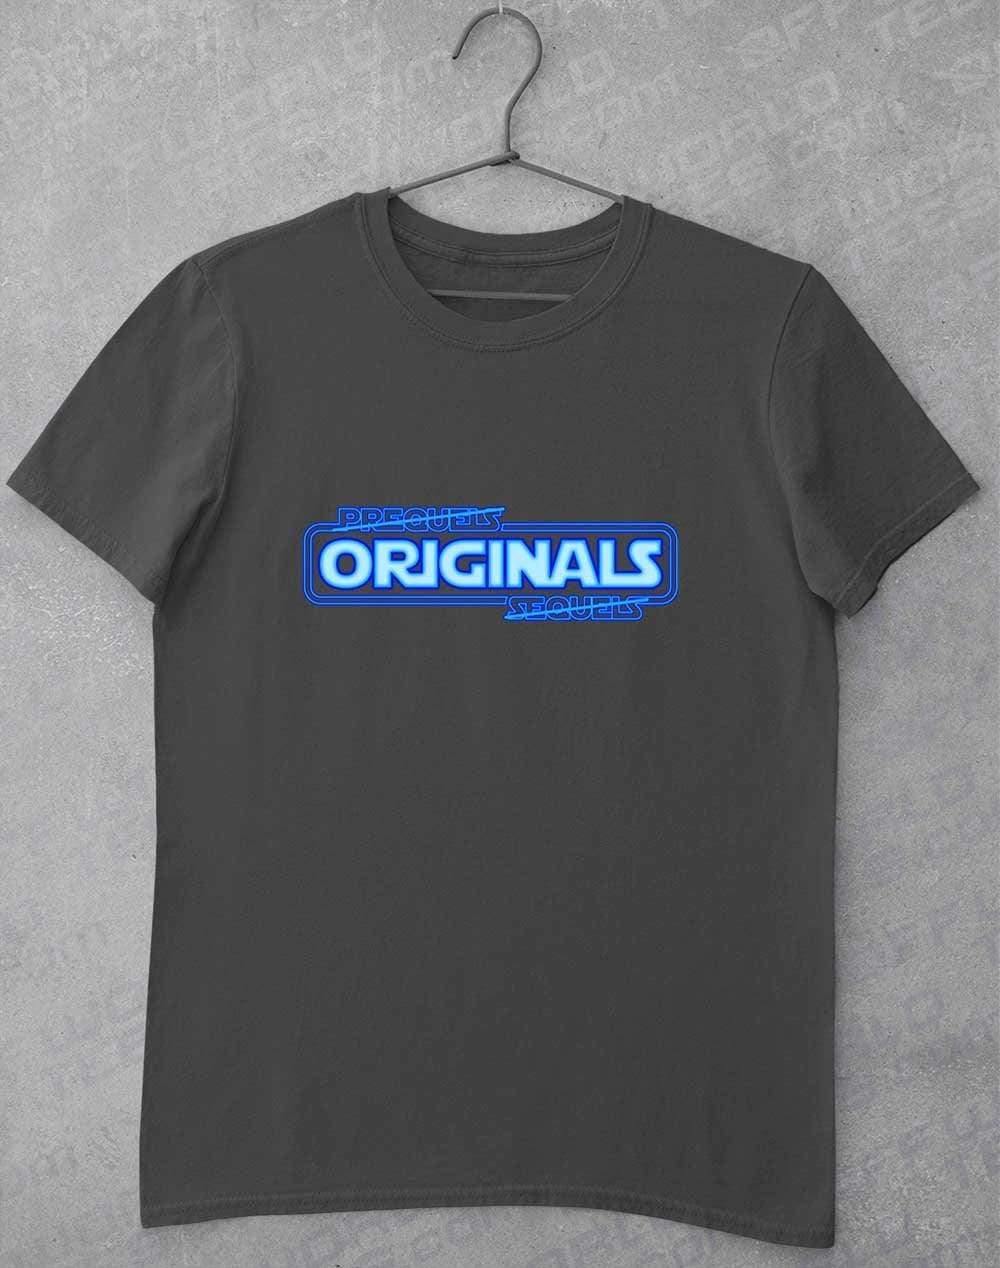 Originals FTW - T-Shirt S / Charcoal  - Off World Tees